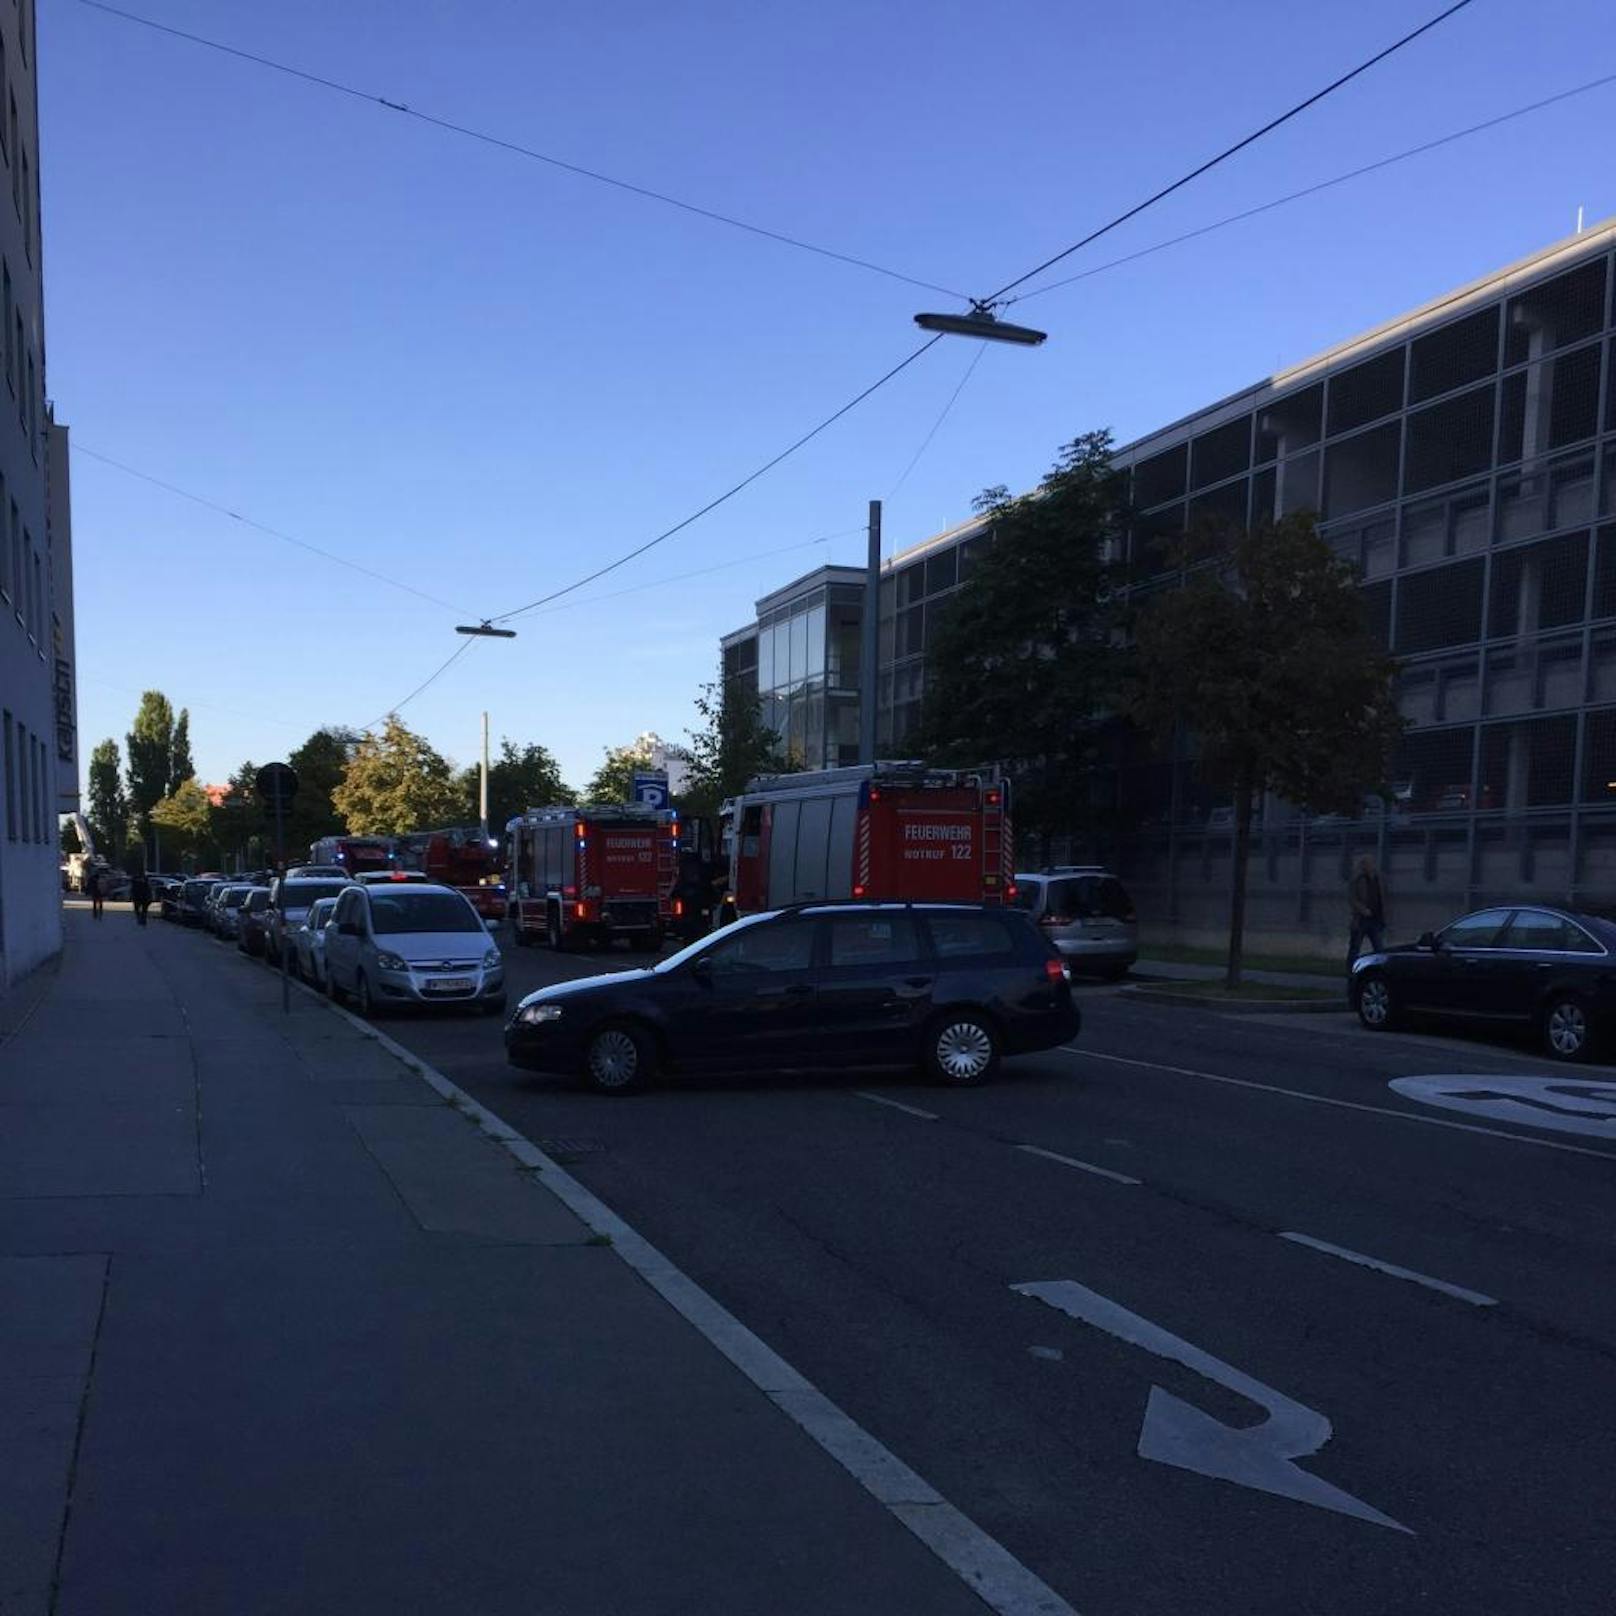 Schwarzer Rauch qualmte am Mittwochmorgen aus der Europlaza-Parkgarage in Wien-Meidling. Die Feuerwehr war mit mehreren Einsatzfahrzeugen vor Ort.